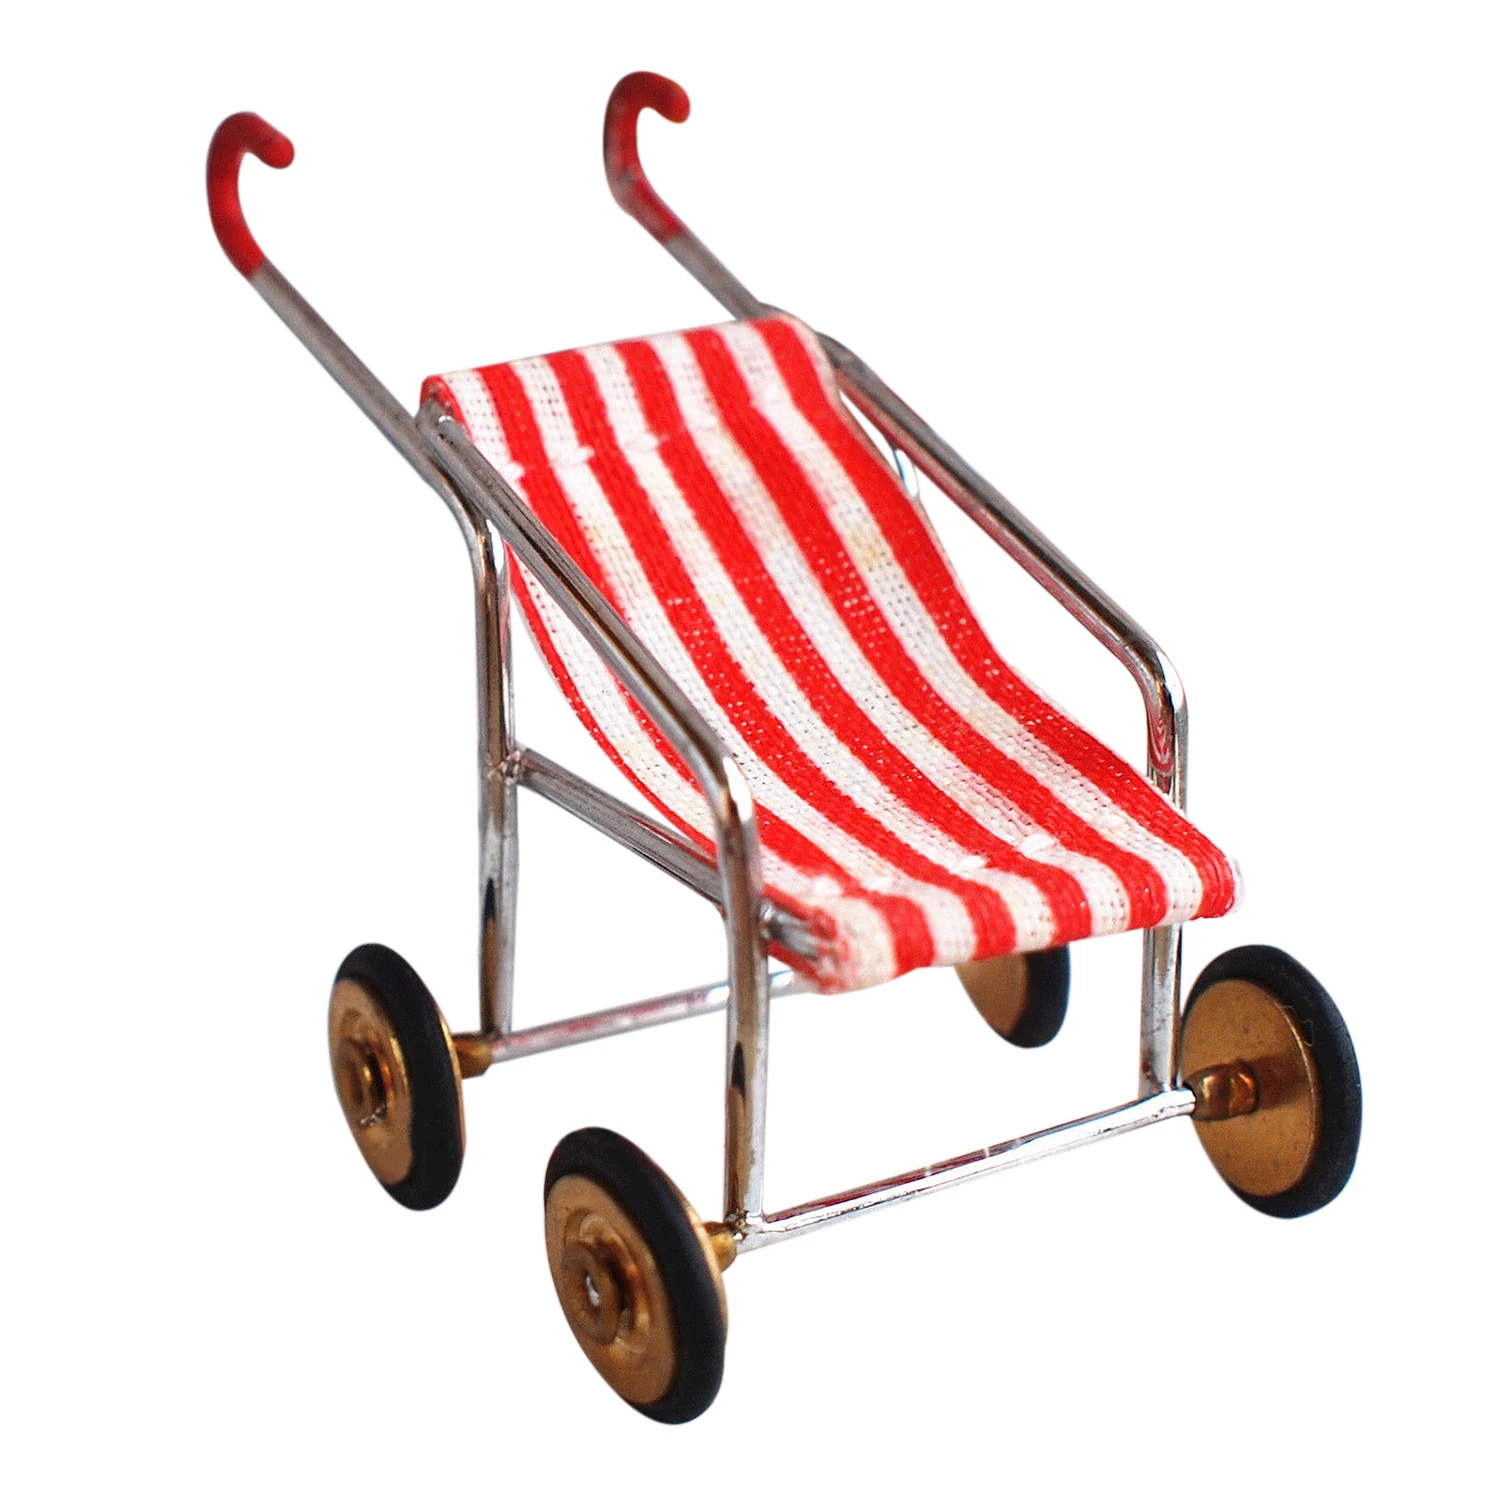 Lcll-кукольная Миниатюра 1:12 игрушка красный в полоску Детские коляски Длина 6 см